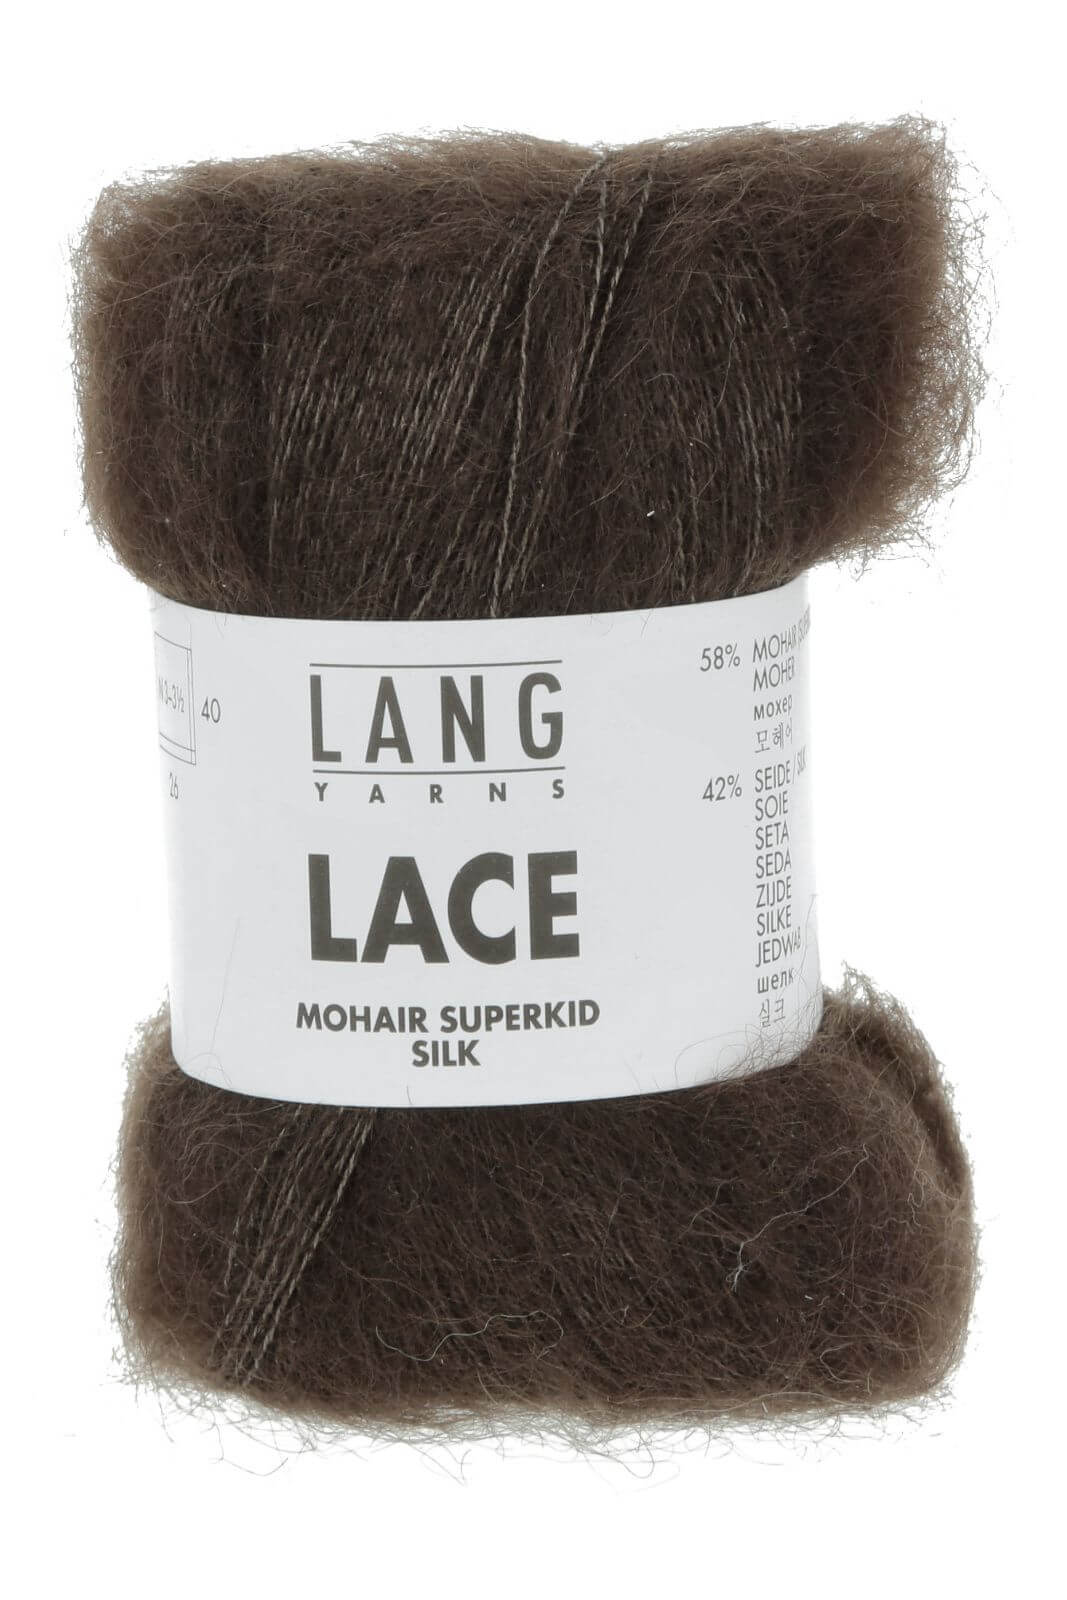 LANG Lace Yarn